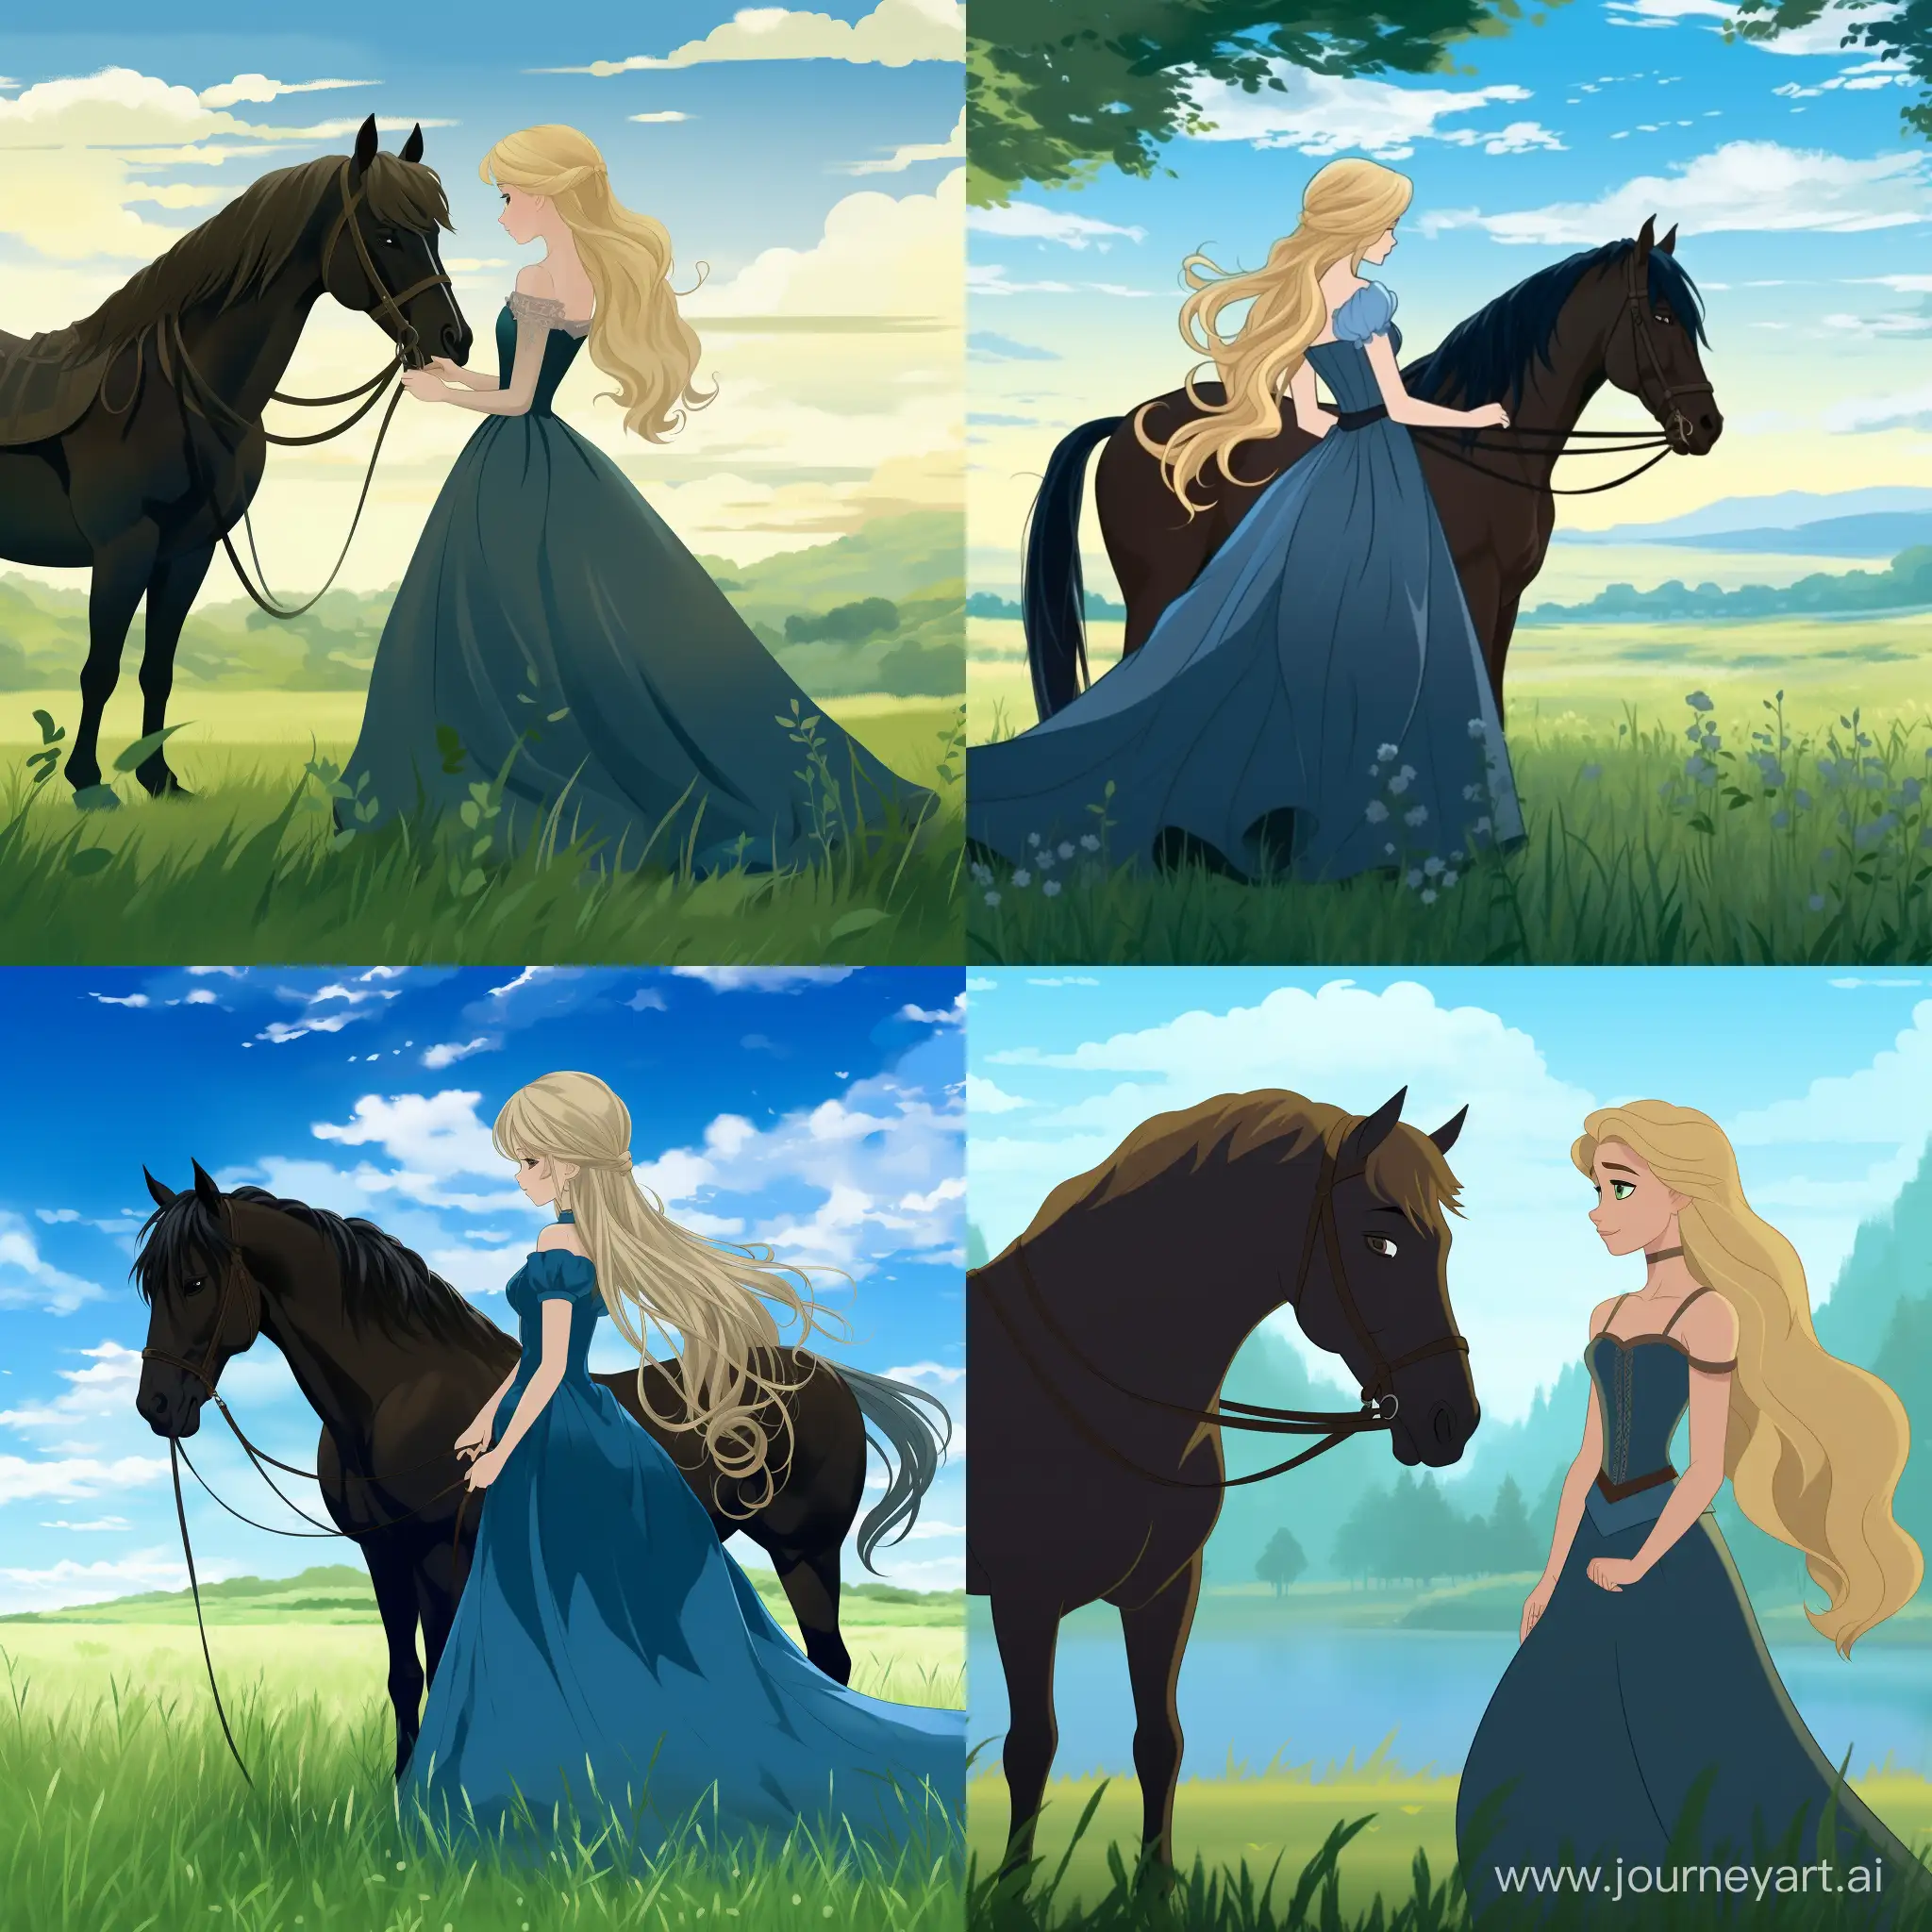 Светловолосая девушка в синем платье стоит рядом с мощной черной лошадью. Она смотрит на нее с восхищением, одновременно ощущая и некоторую тревогу перед этим величественным животным. Девушка нежно поглаживает лошадь по гладкому меху, в то время как животное смиренно наклоняет голову в сторону ее ладони. Их силуэты выделяются на фоне яркого зеленого луга и голубого неба, создавая красивый и гармоничный образ.